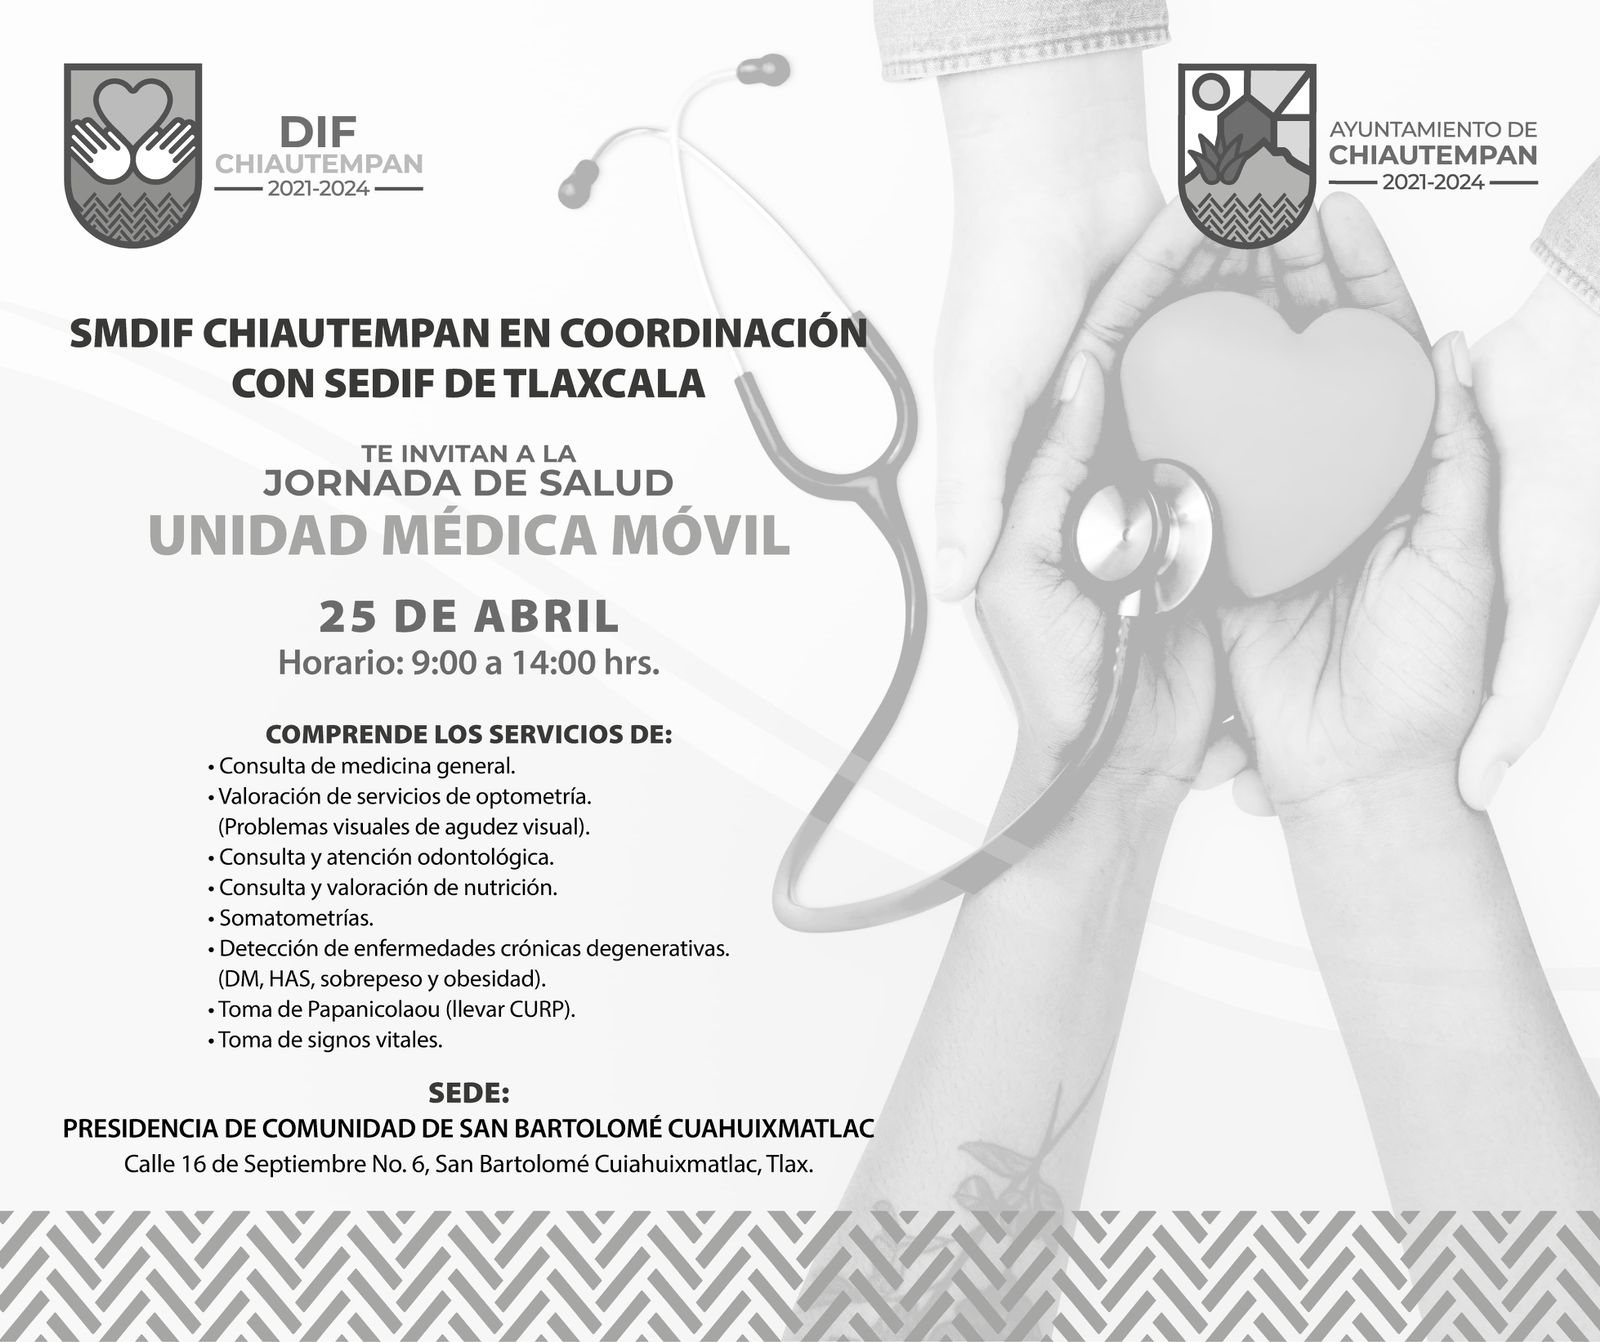 La Unidad Médica Móvil visitará la comunidad de San Bartolomé Cuahuixmatlac en Chiautempan